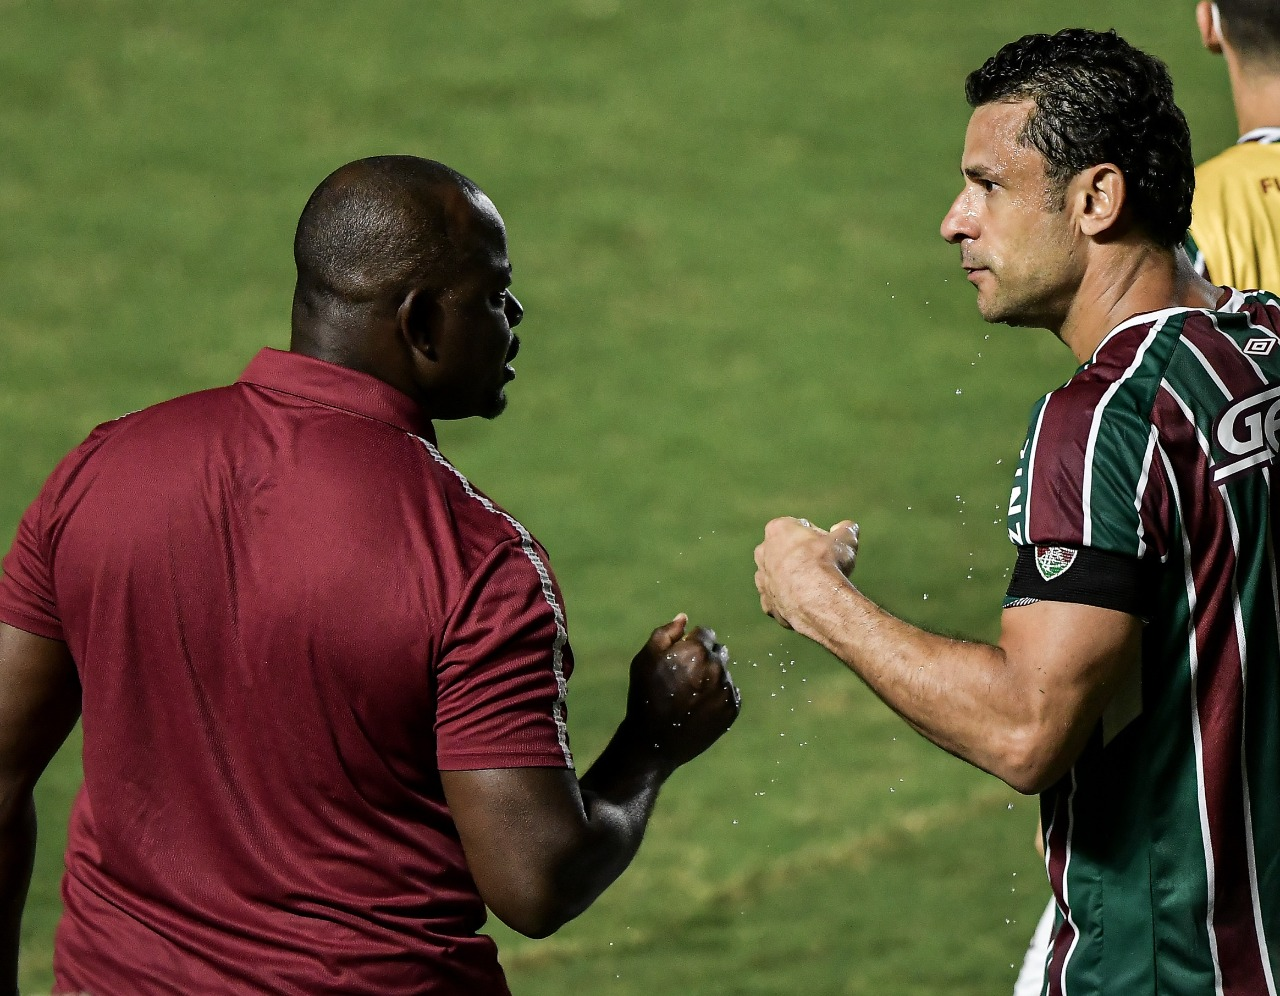 GE FLUMINENSE #153 - Empate com Atlético-MG em reestreia de Marcão traz mais perspectivas para o Fluminense?